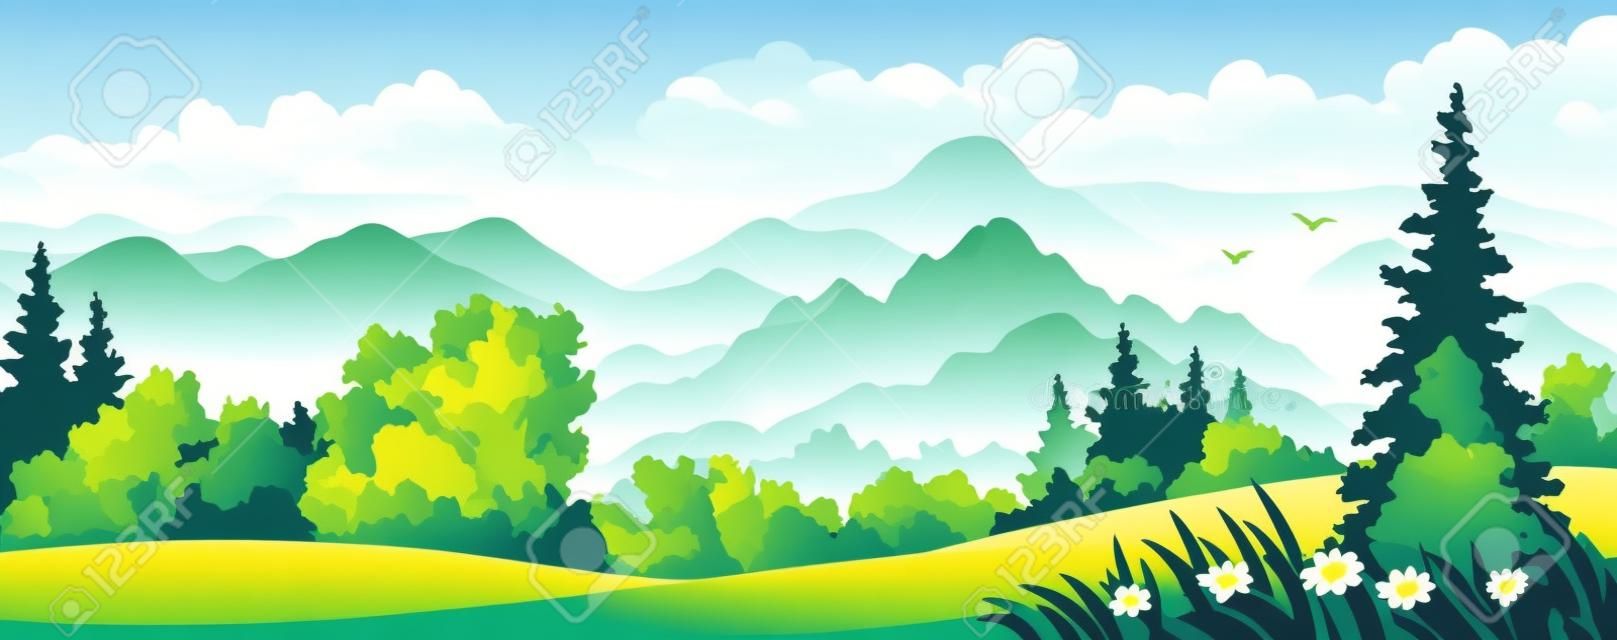 Vector illustratie van een prachtig bos op de bergen